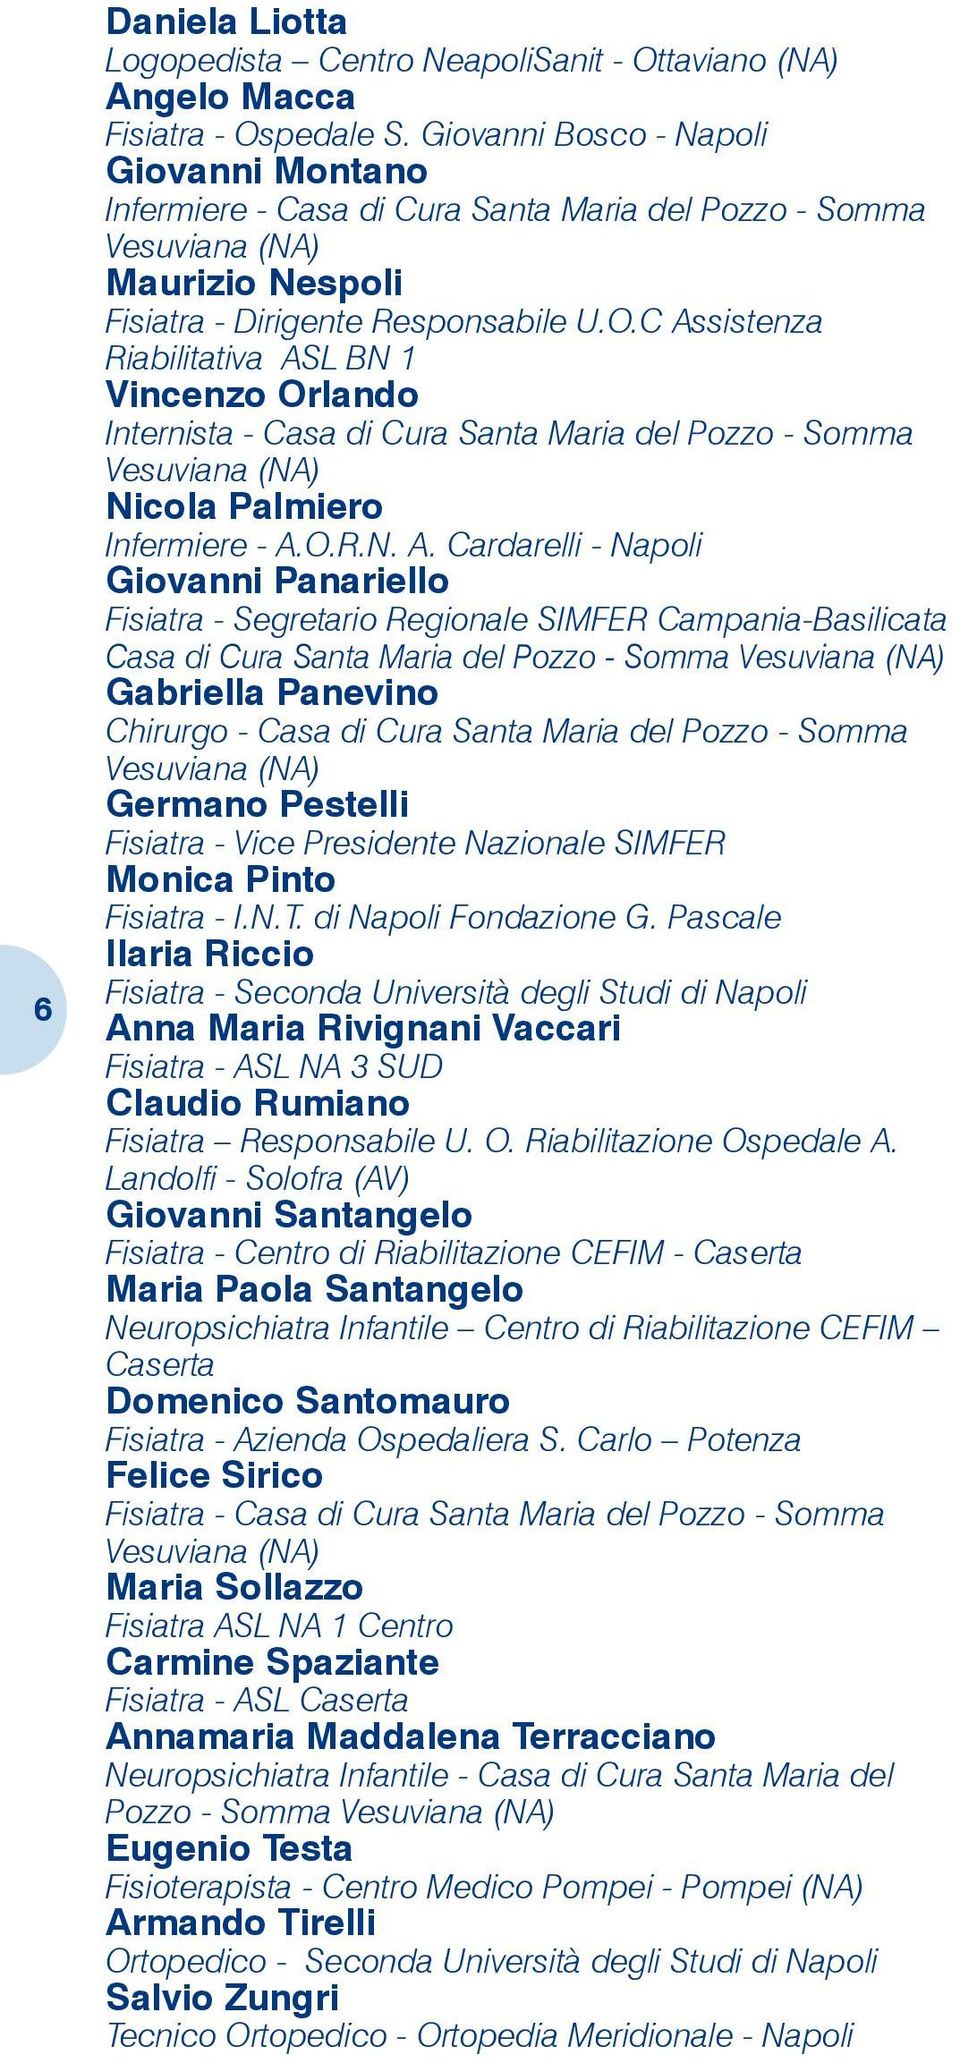 C Assistenza Riabilitativa ASL BN 1 Vincenzo Orlando Internista - Casa di Cura Santa Maria del Pozzo - Somma Vesuviana (NA) Nicola Palmiero Infermiere - A.O.R.N. A. Cardarelli - Napoli Giovanni